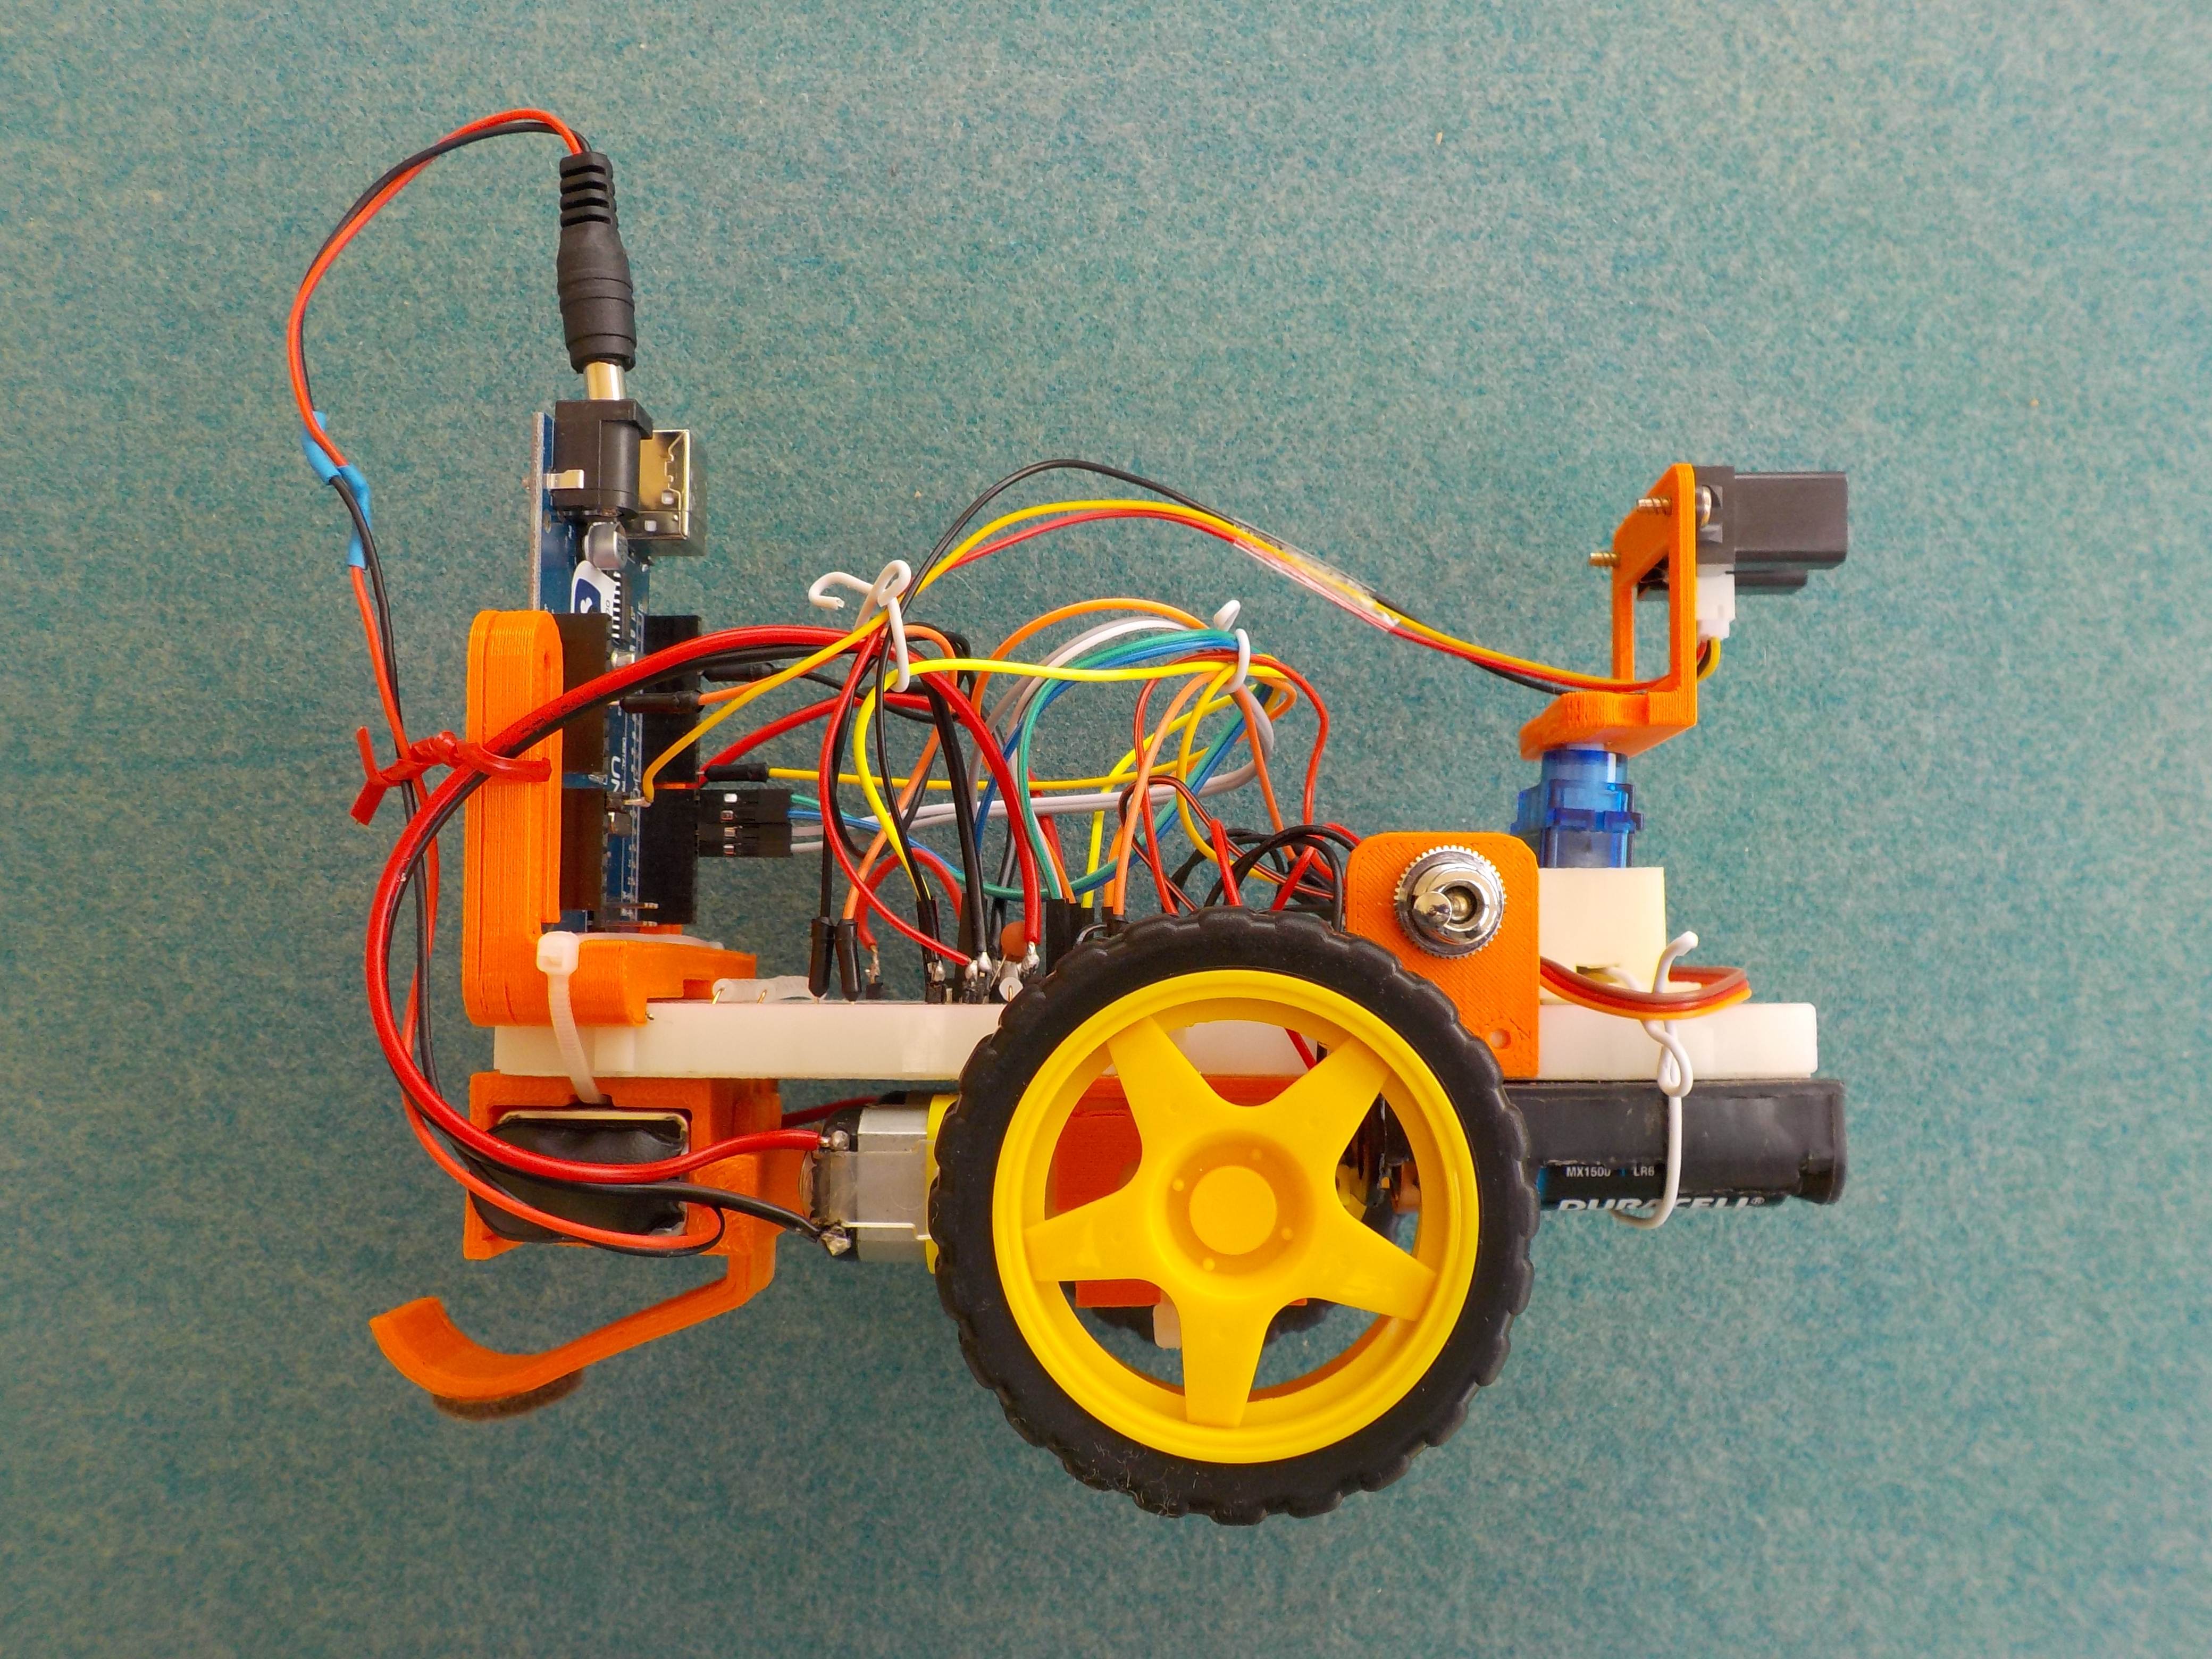 Robot kit for breadboard – Version 2